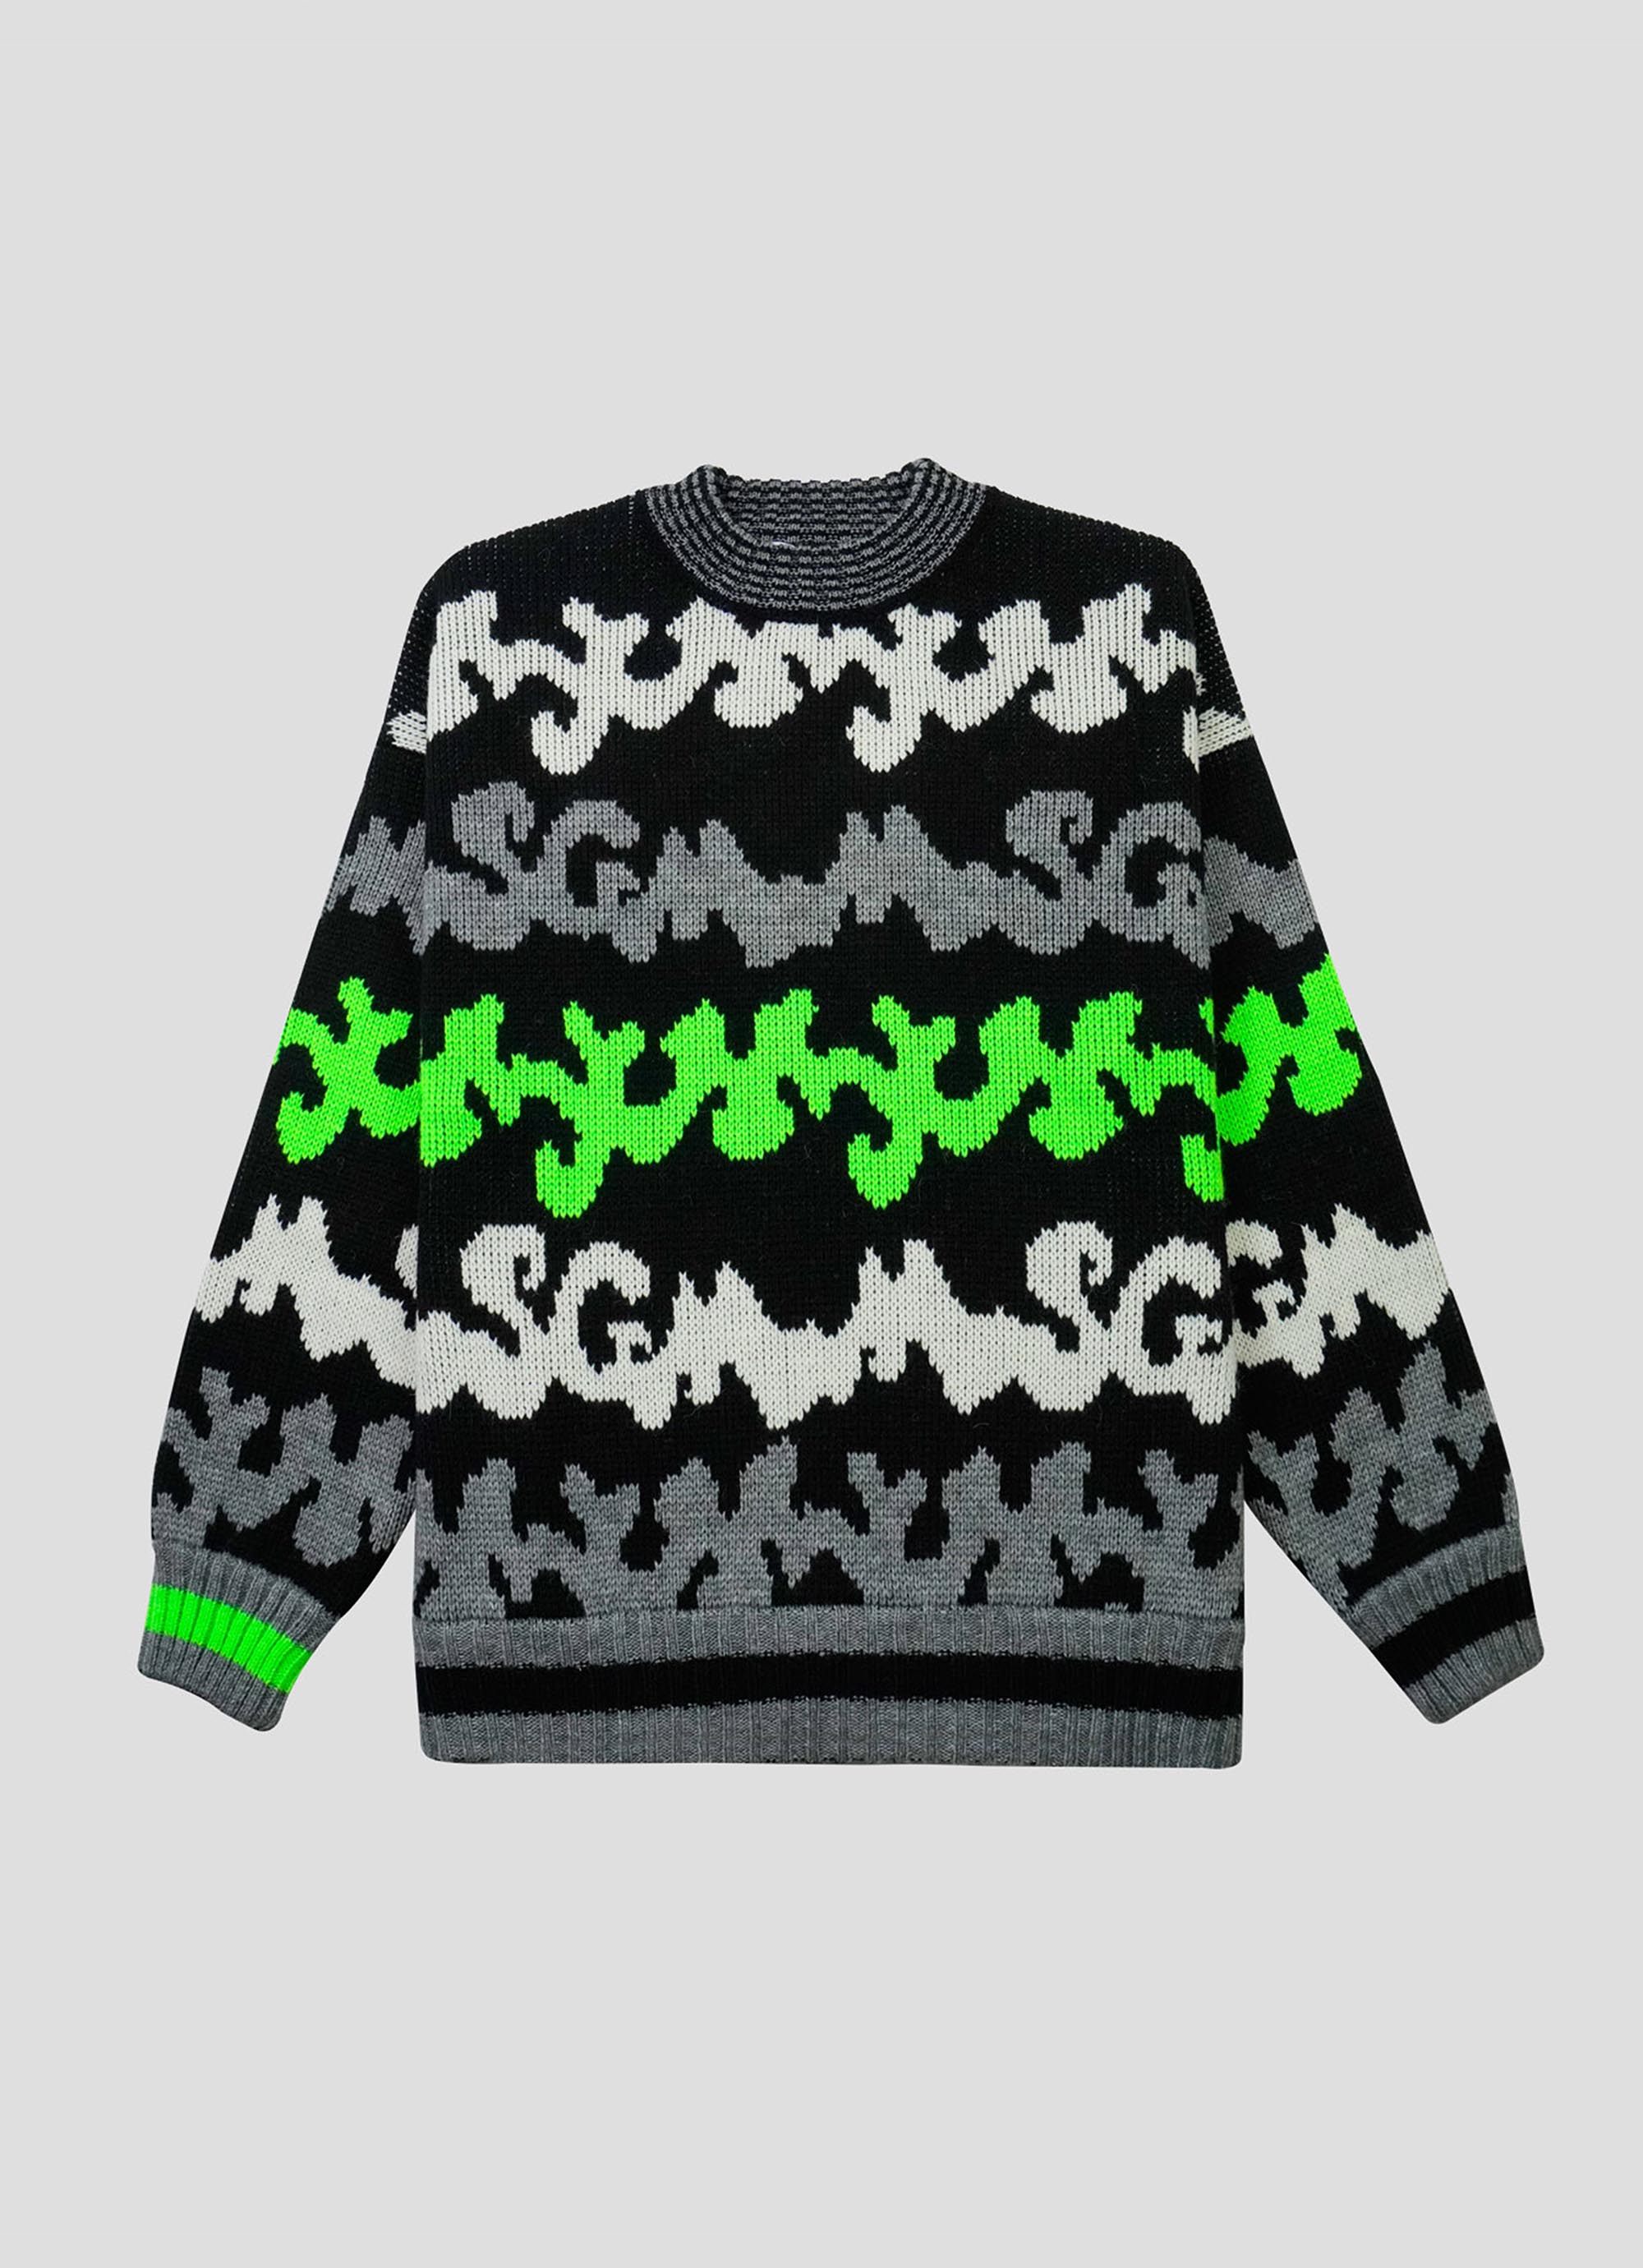 ジャガードマルチロゴ セーターの商品画像